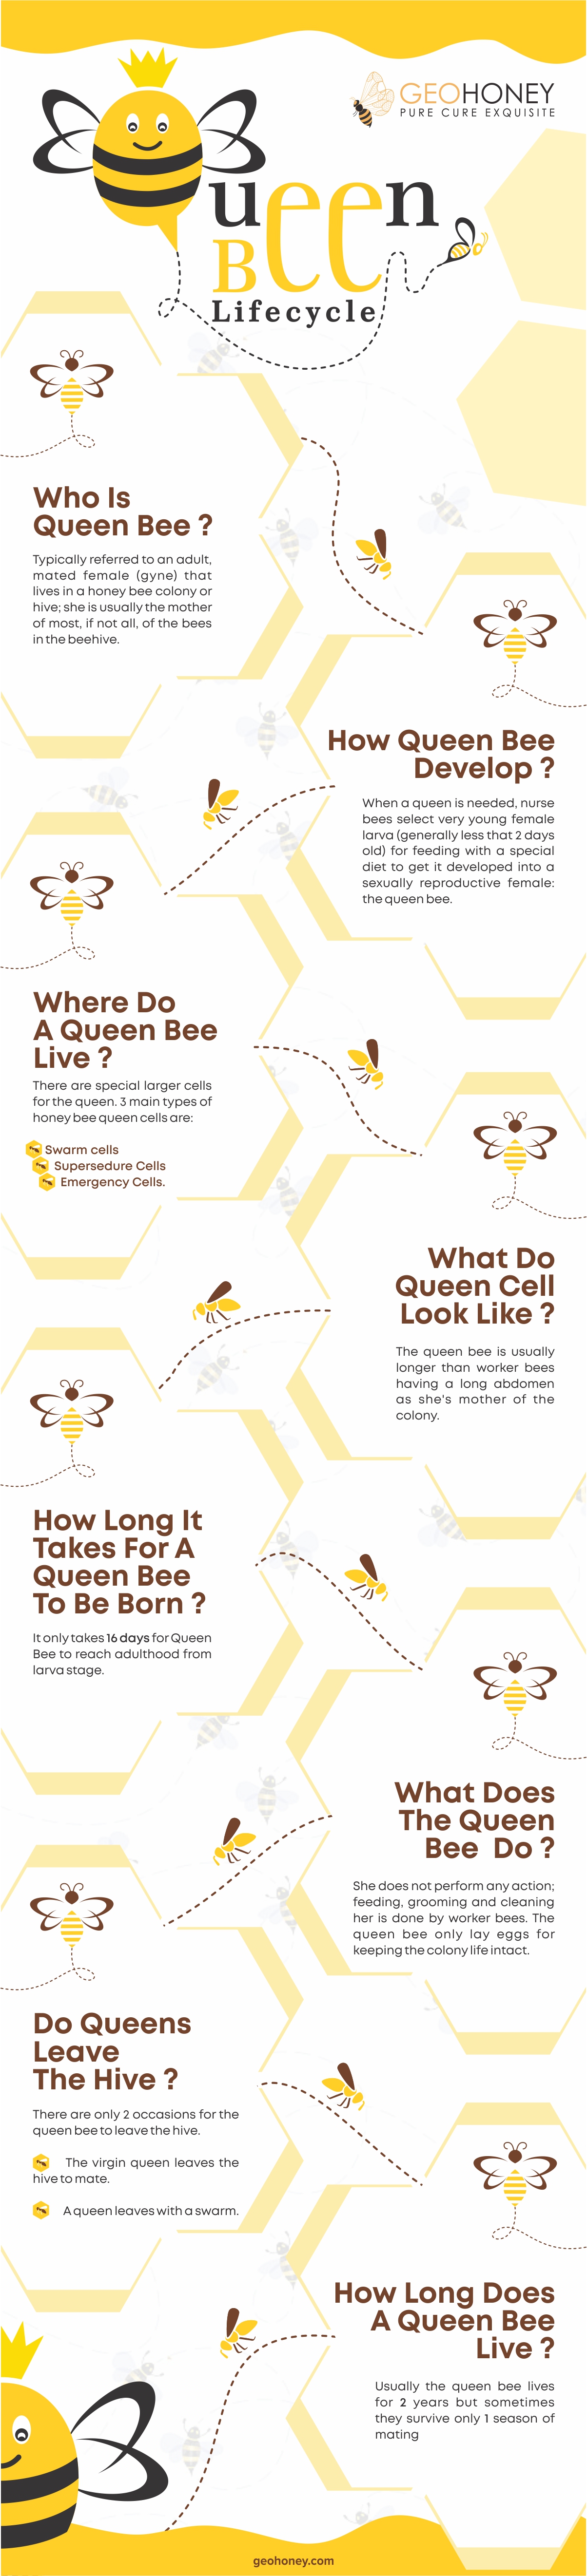 دورة حياة ملكة النحل - Geohoney